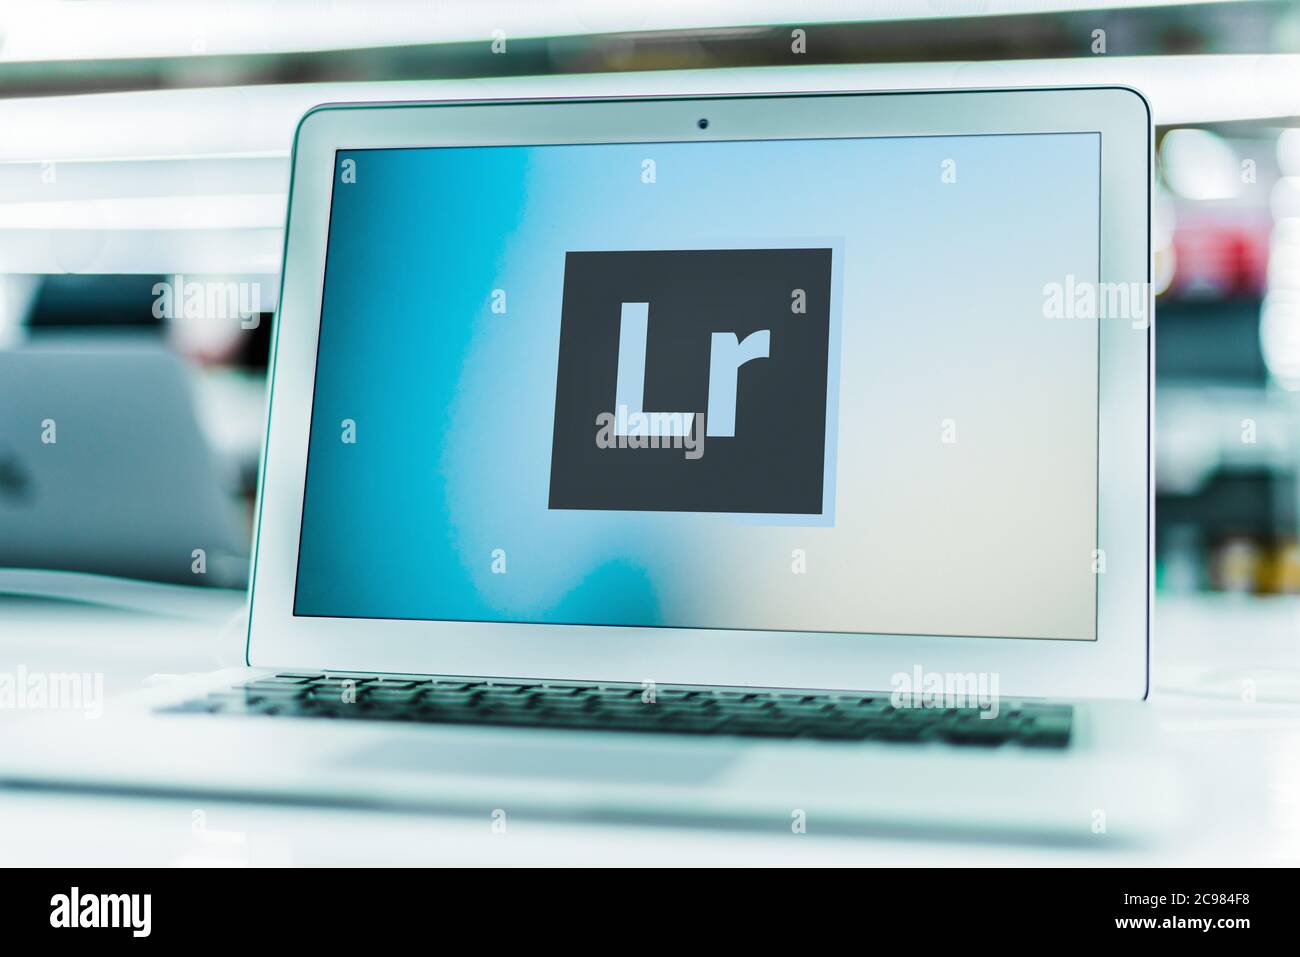 POZNAN, POL - JUN 16, 2020: Laptop-Computer mit Logo von Adobe Lightroom, eine Familie von Bildorganisation und Bildbearbeitung Software entwickeln Stockfoto